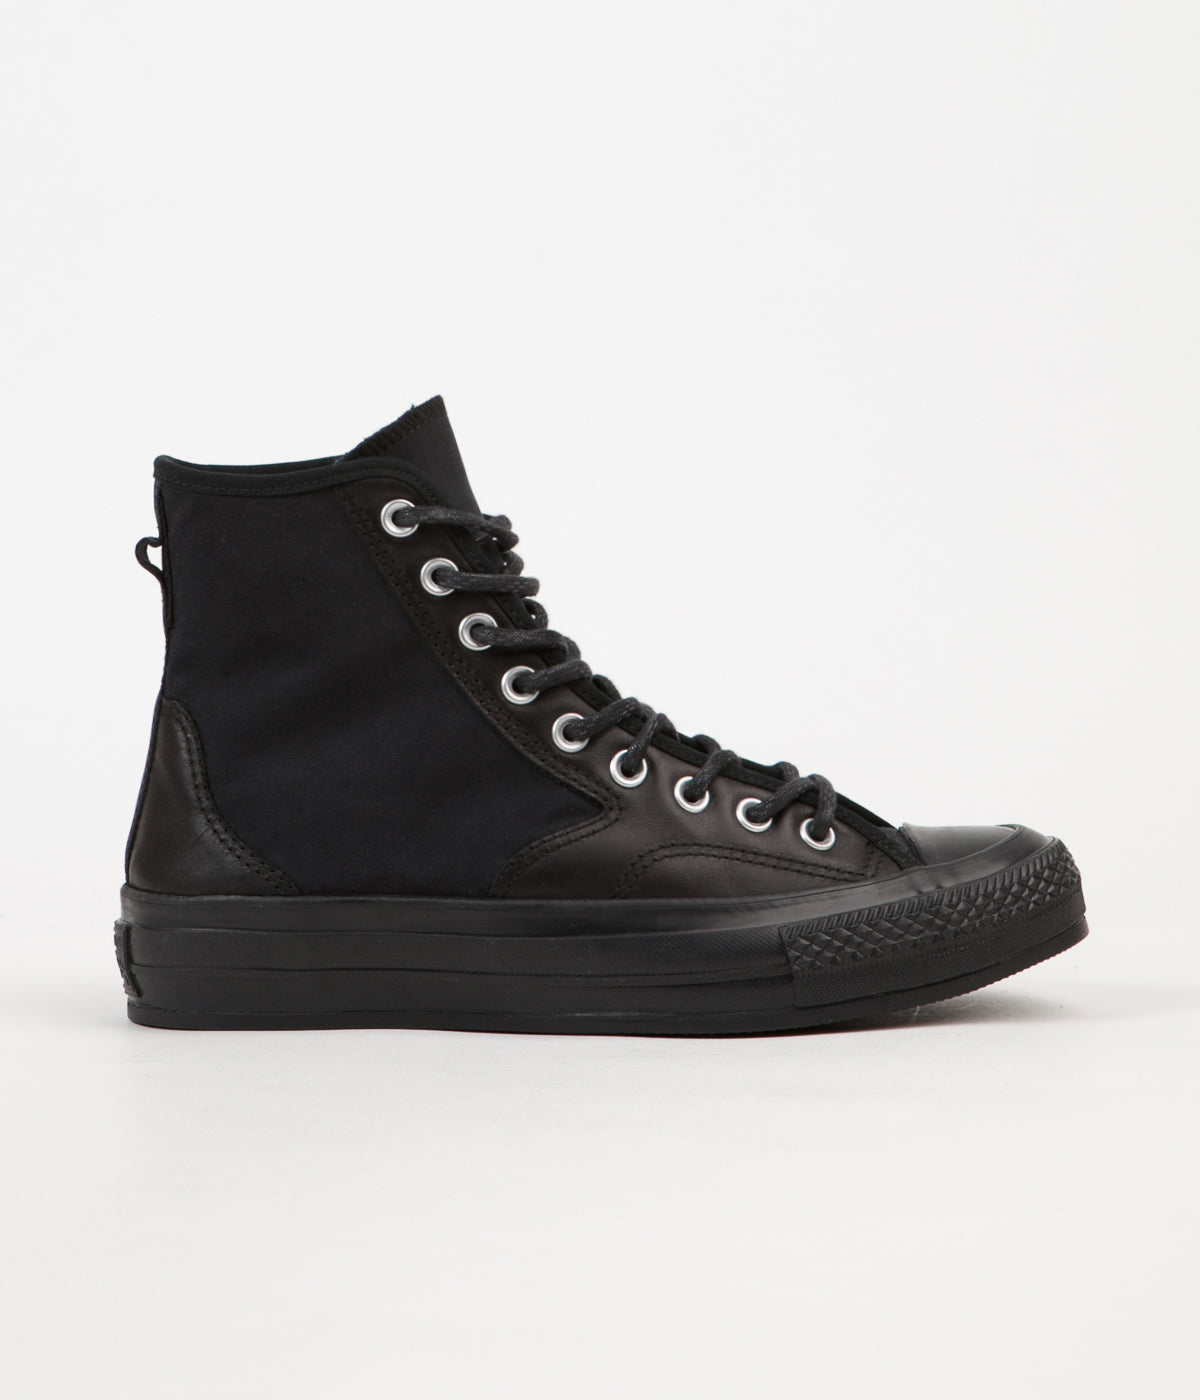 Converse CTAS 70's Hiker Hi Shoes - Black / Black / Black | Flatspot